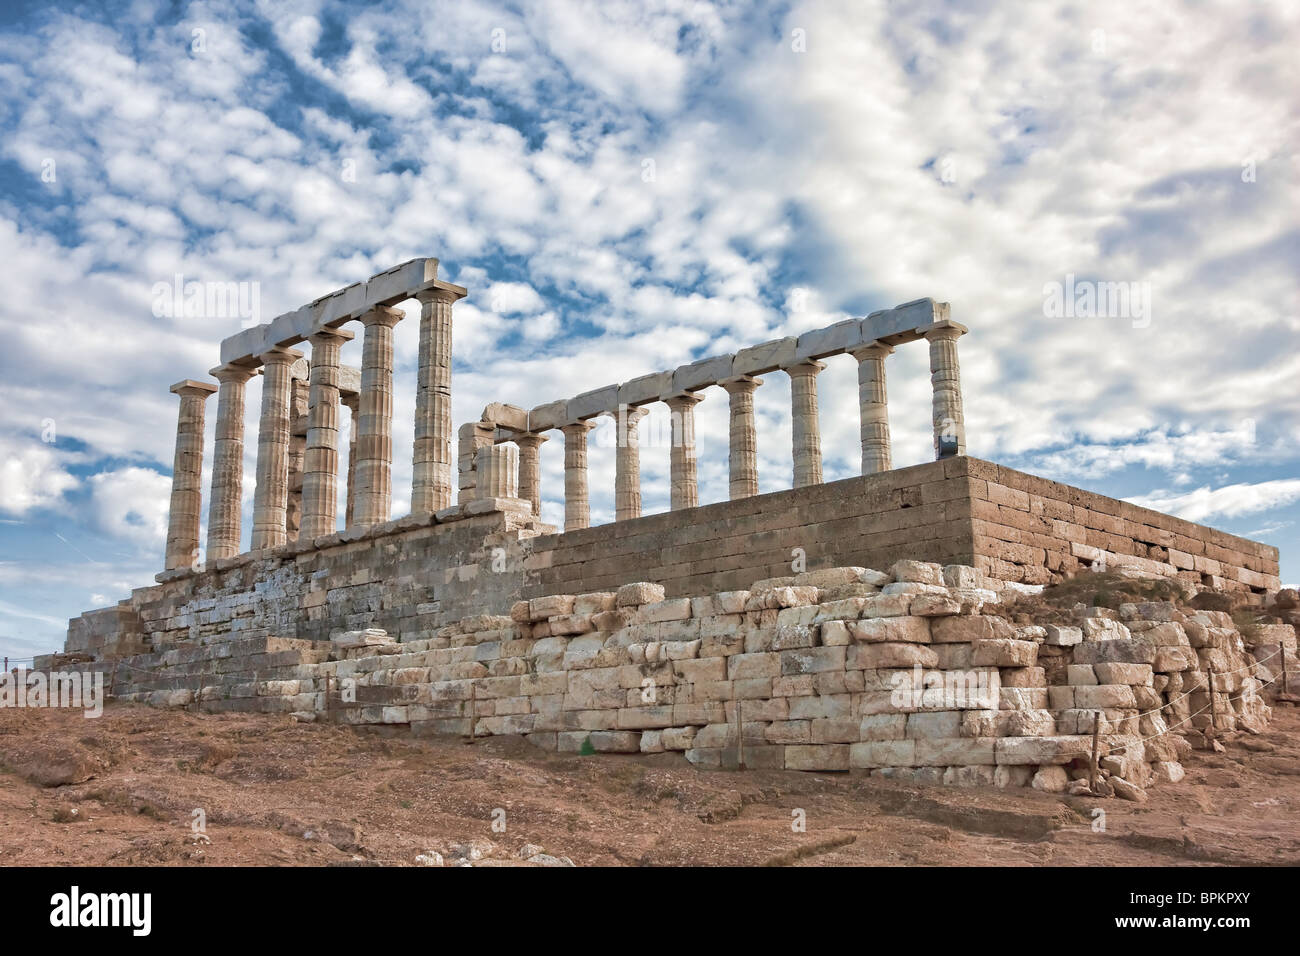 Poseidon's Temple at Cape Sounio in Attiki region of Greece. Stock Photo